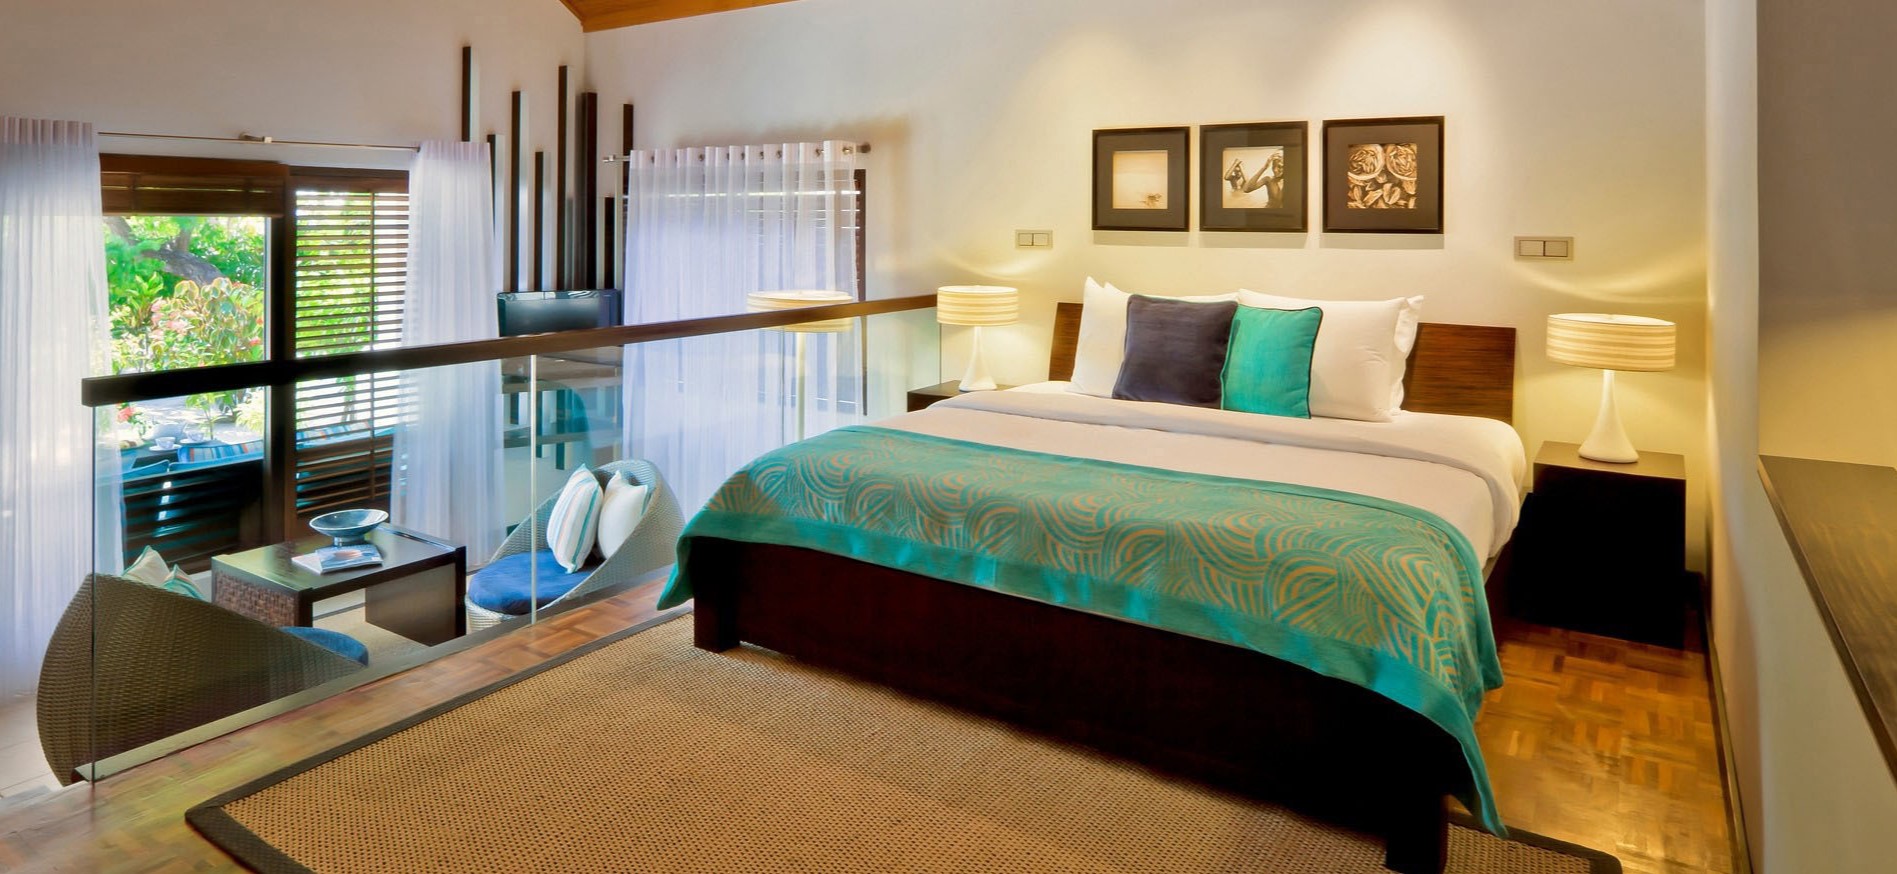 Кровать с деревянным основанием гармонично вписалась в современный интерьер